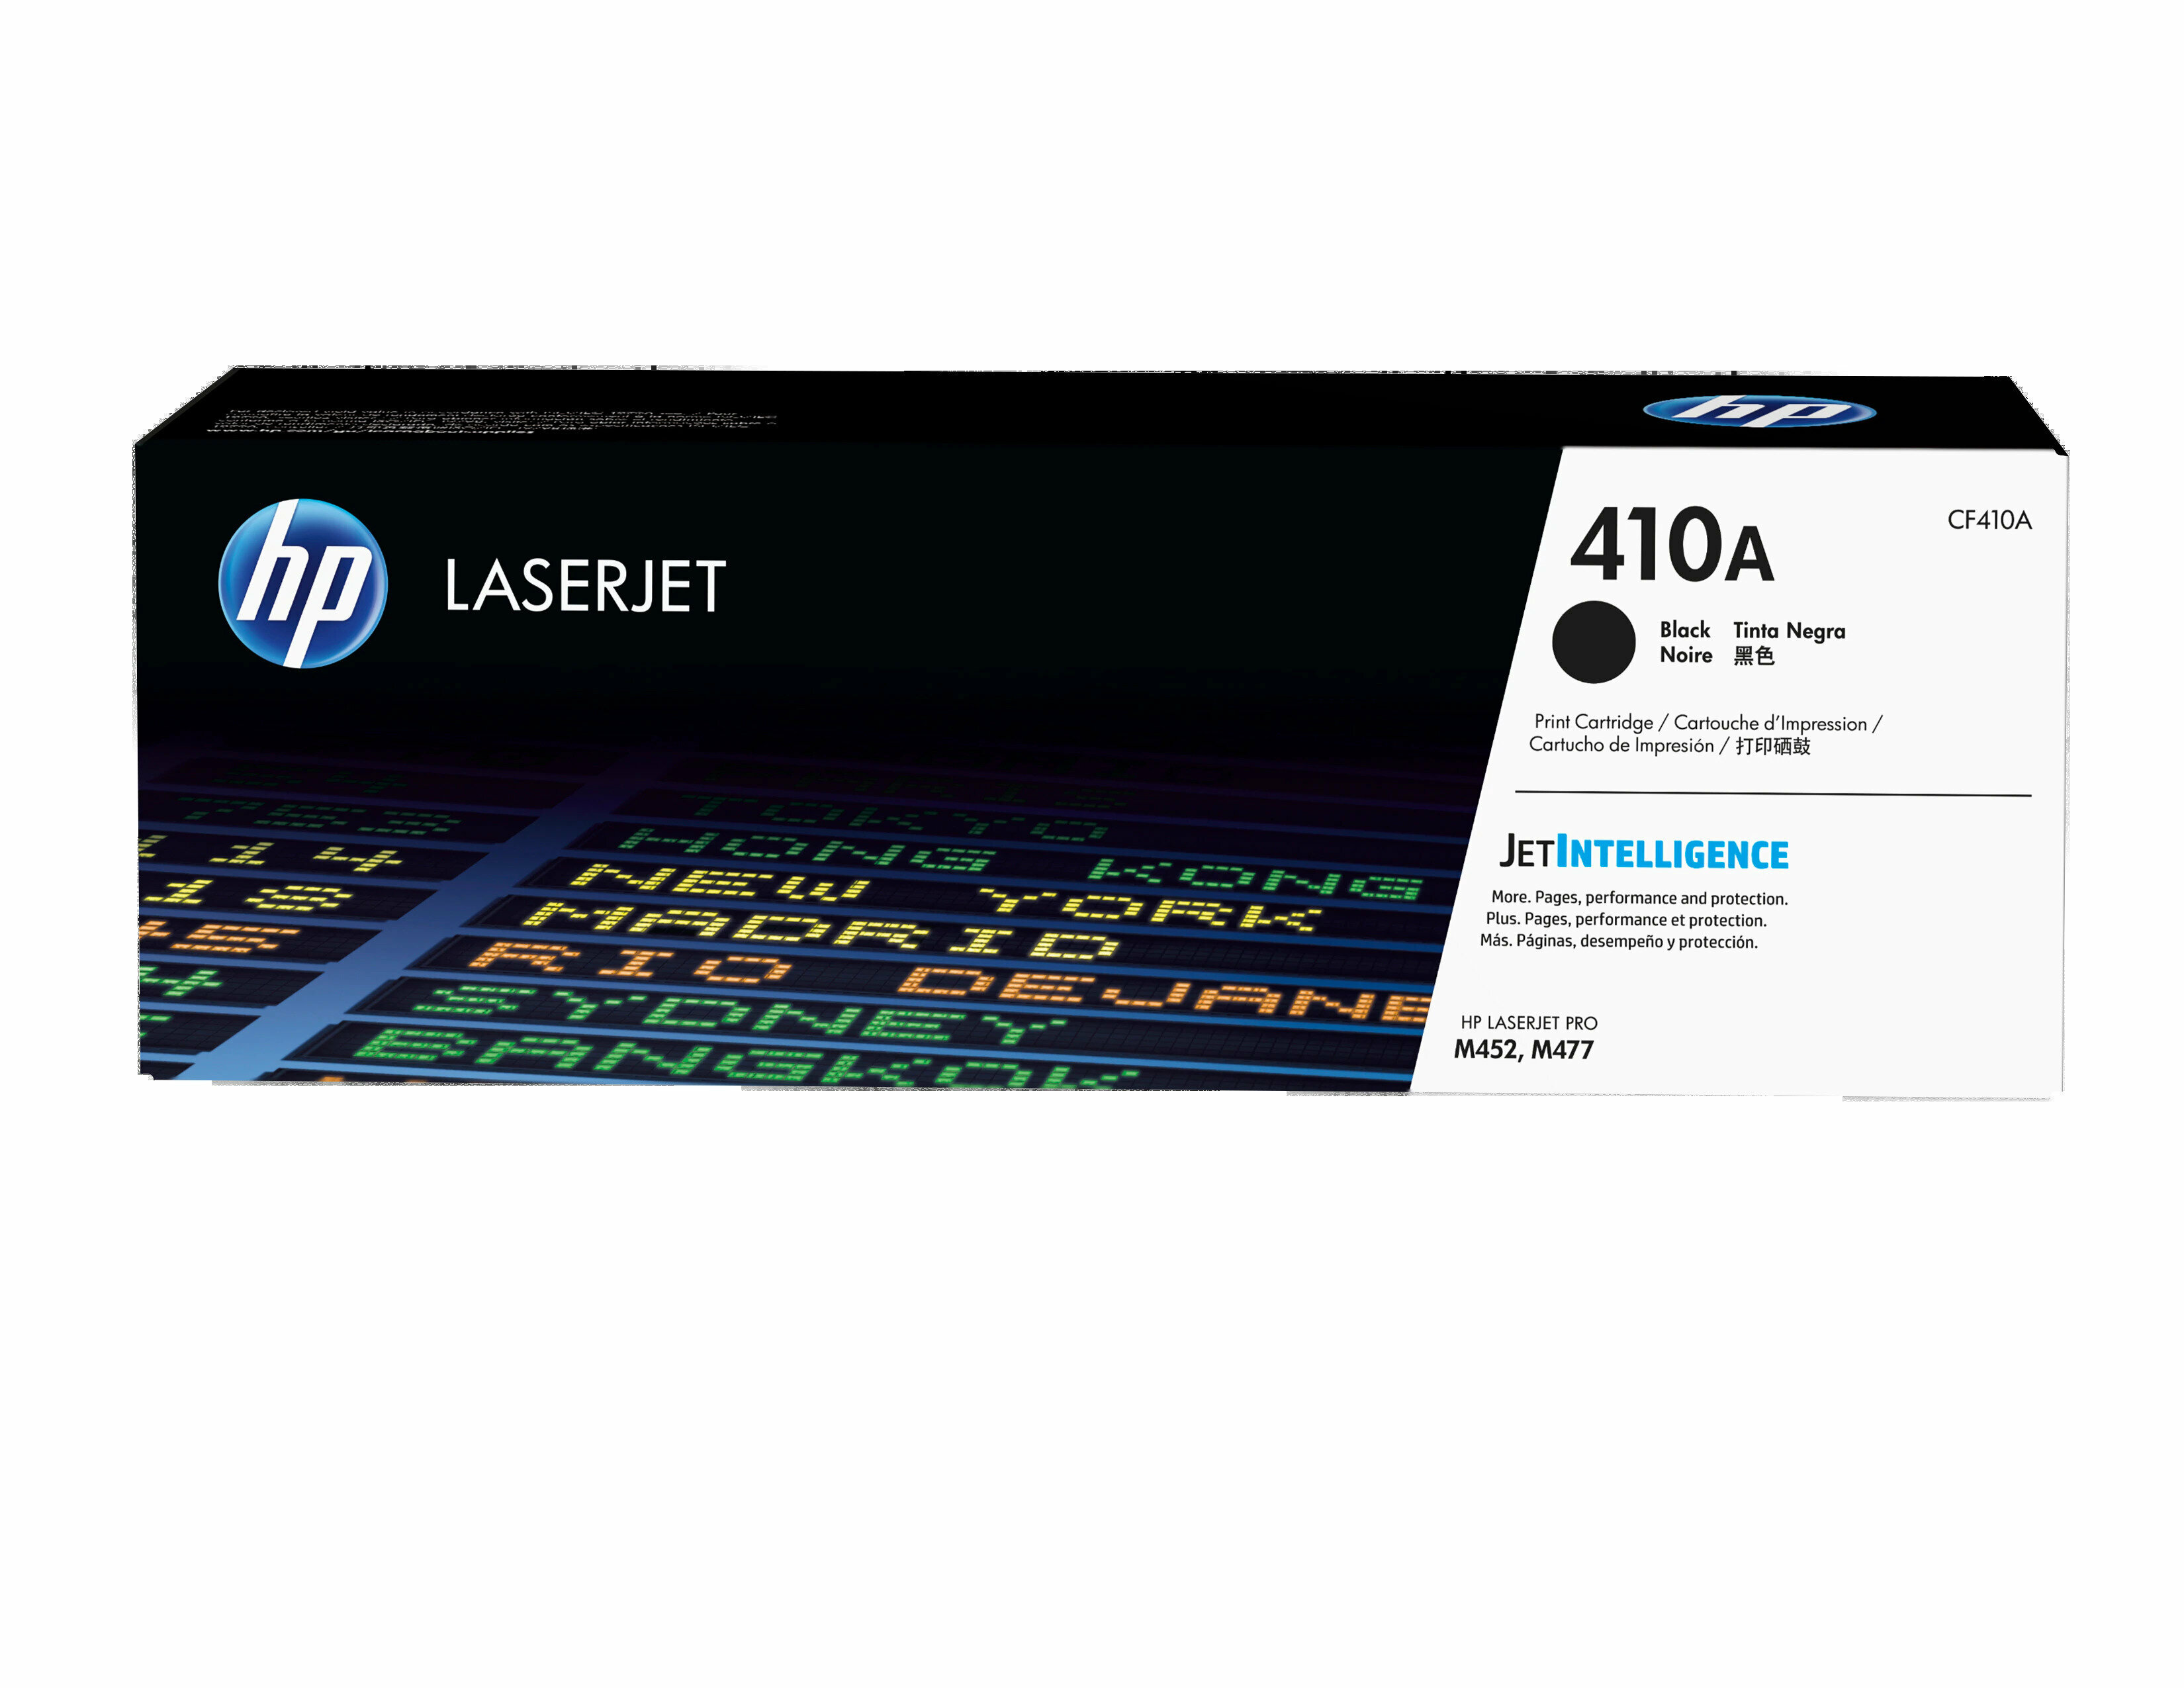 Картридж для печати HP Картридж HP 410A CF410A вид печати лазерный, цвет Черный, емкость